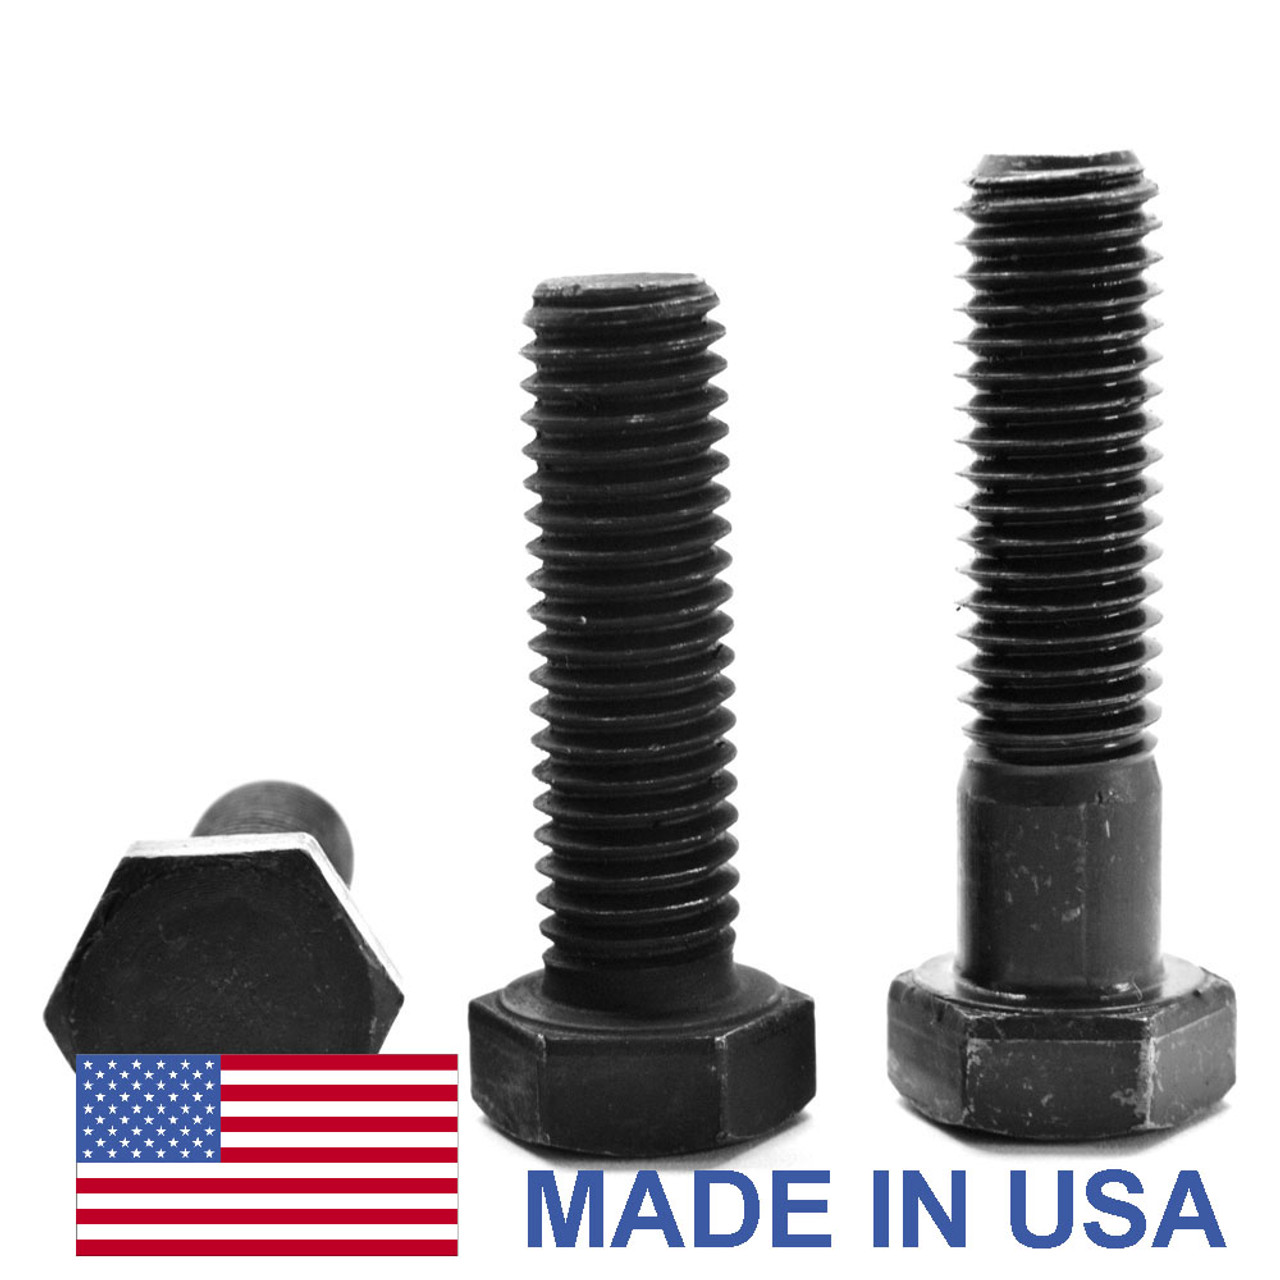 1"-14 x 3 1/4" (PT) UNS Thread Grade 5 Hex Cap Screw (Bolt) - USA Medium Carbon Steel Black Oxide